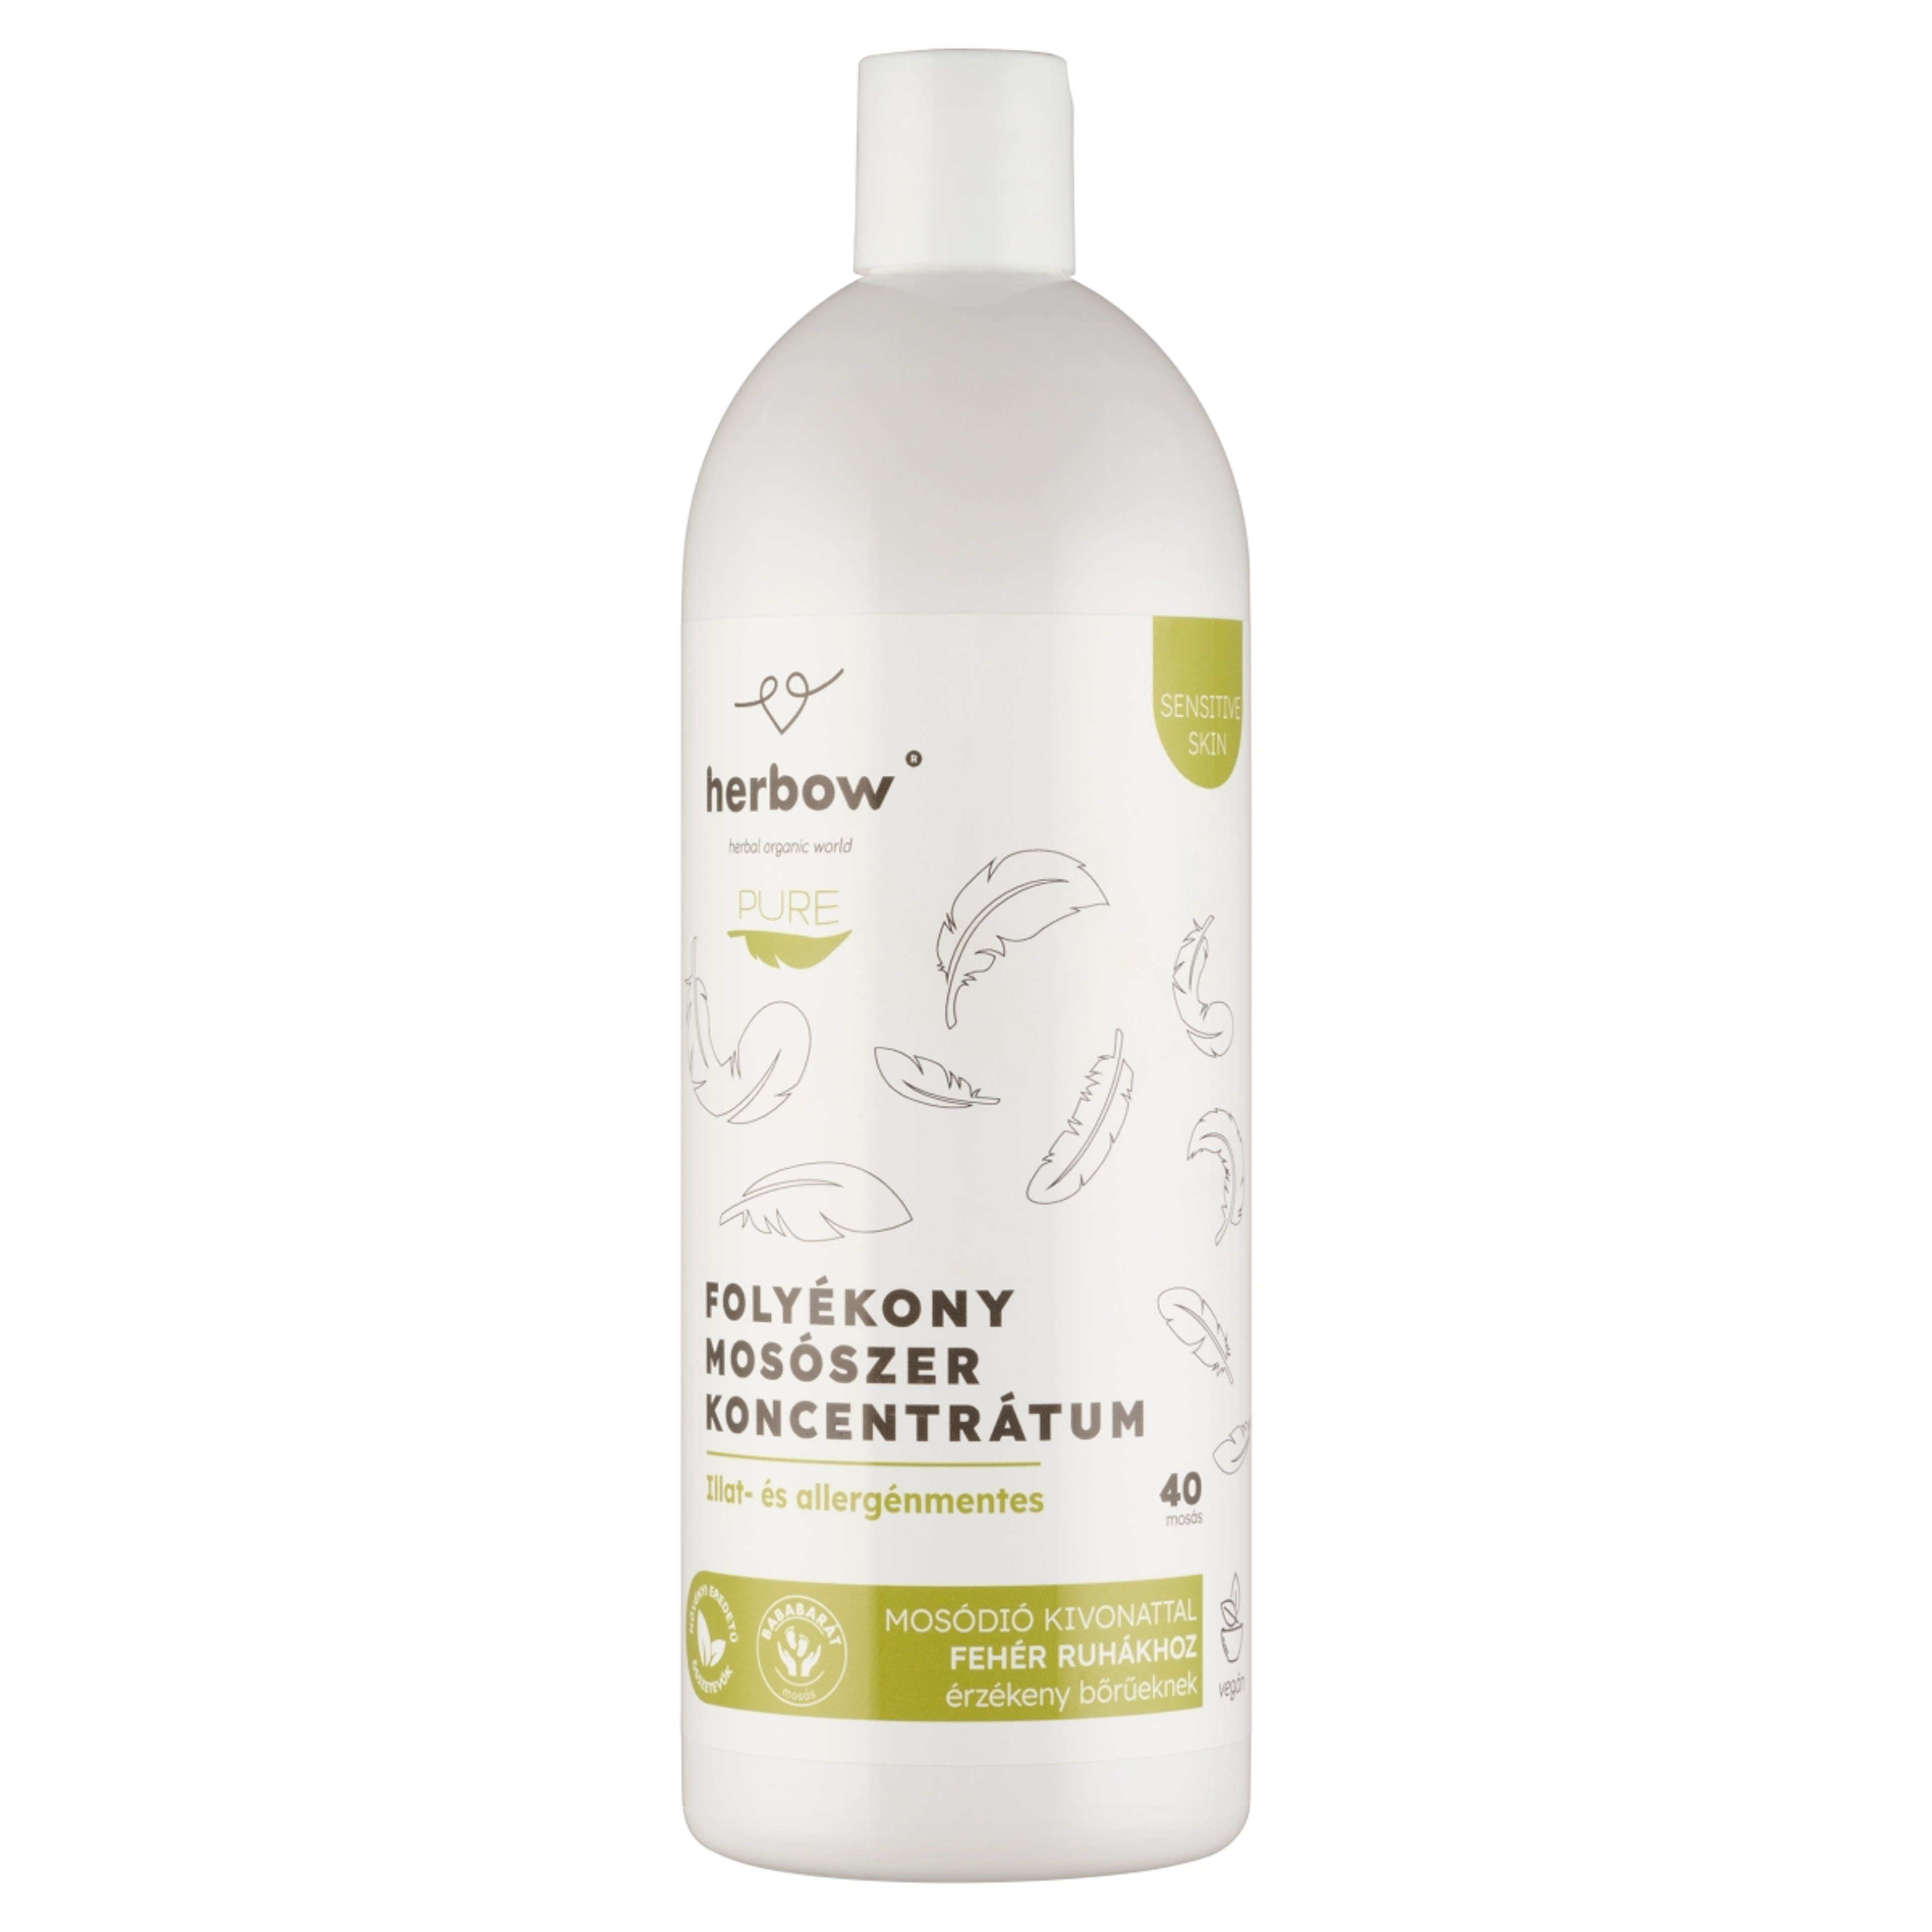 Herbow Pure folyékony mosószer, fehér ruhákhoz 40 mosás - 1000 ml